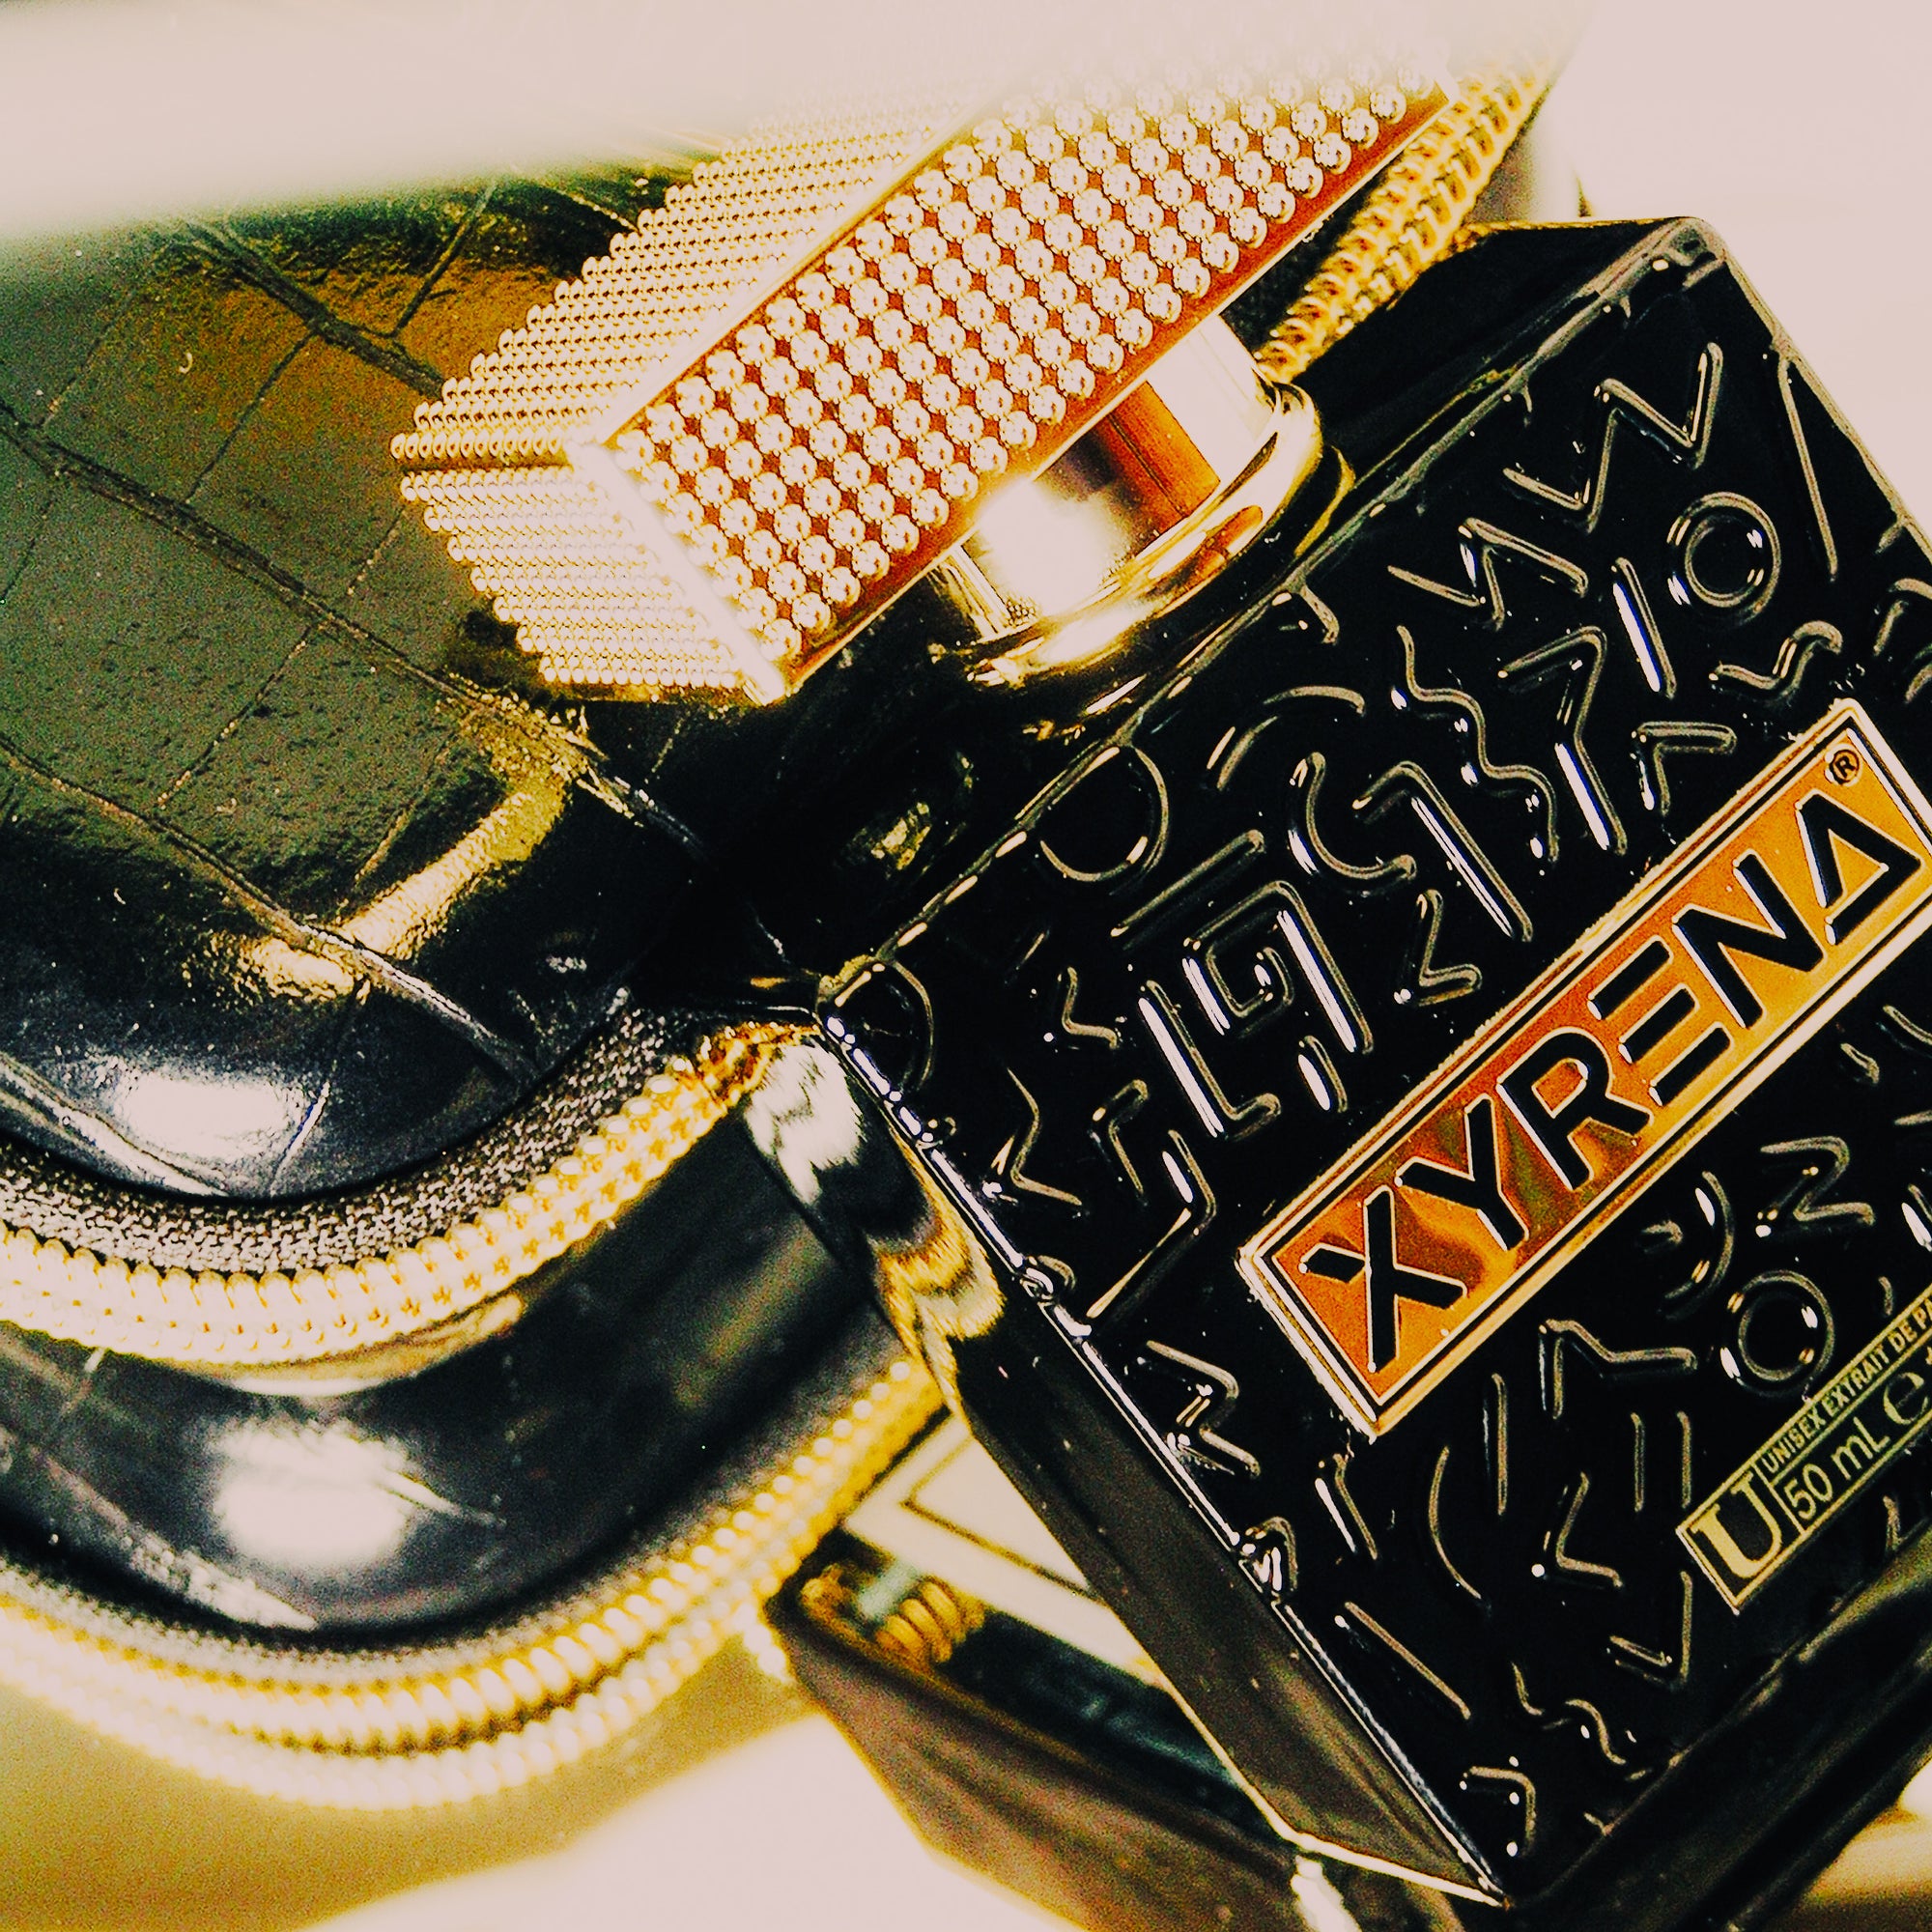 Camp Xyrena - Extrait de Parfum